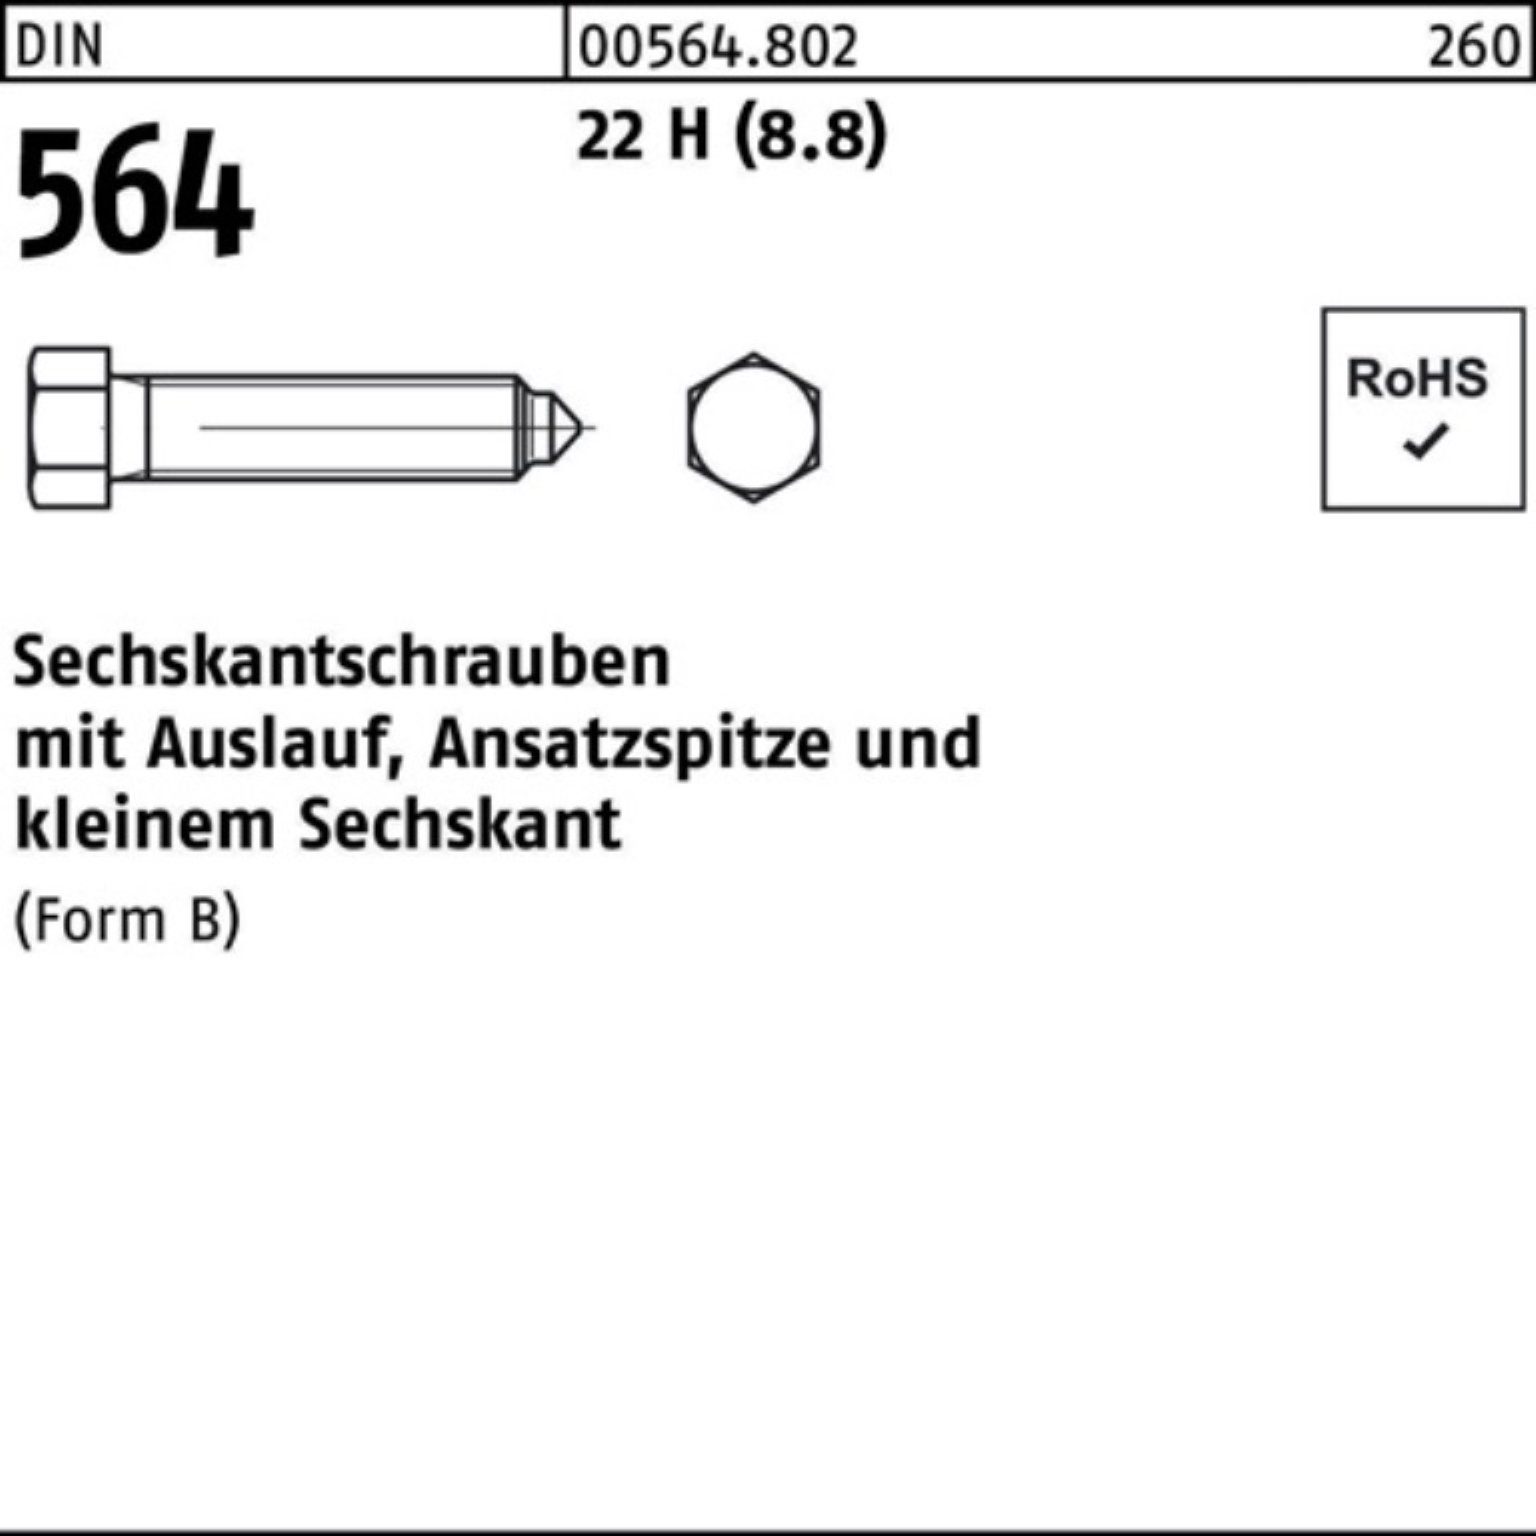 Sechskantschraube Pack Ansatzspitze/Auslauf 10x 22 Reyher 60 100er DIN Sechskantschraube 564 BM